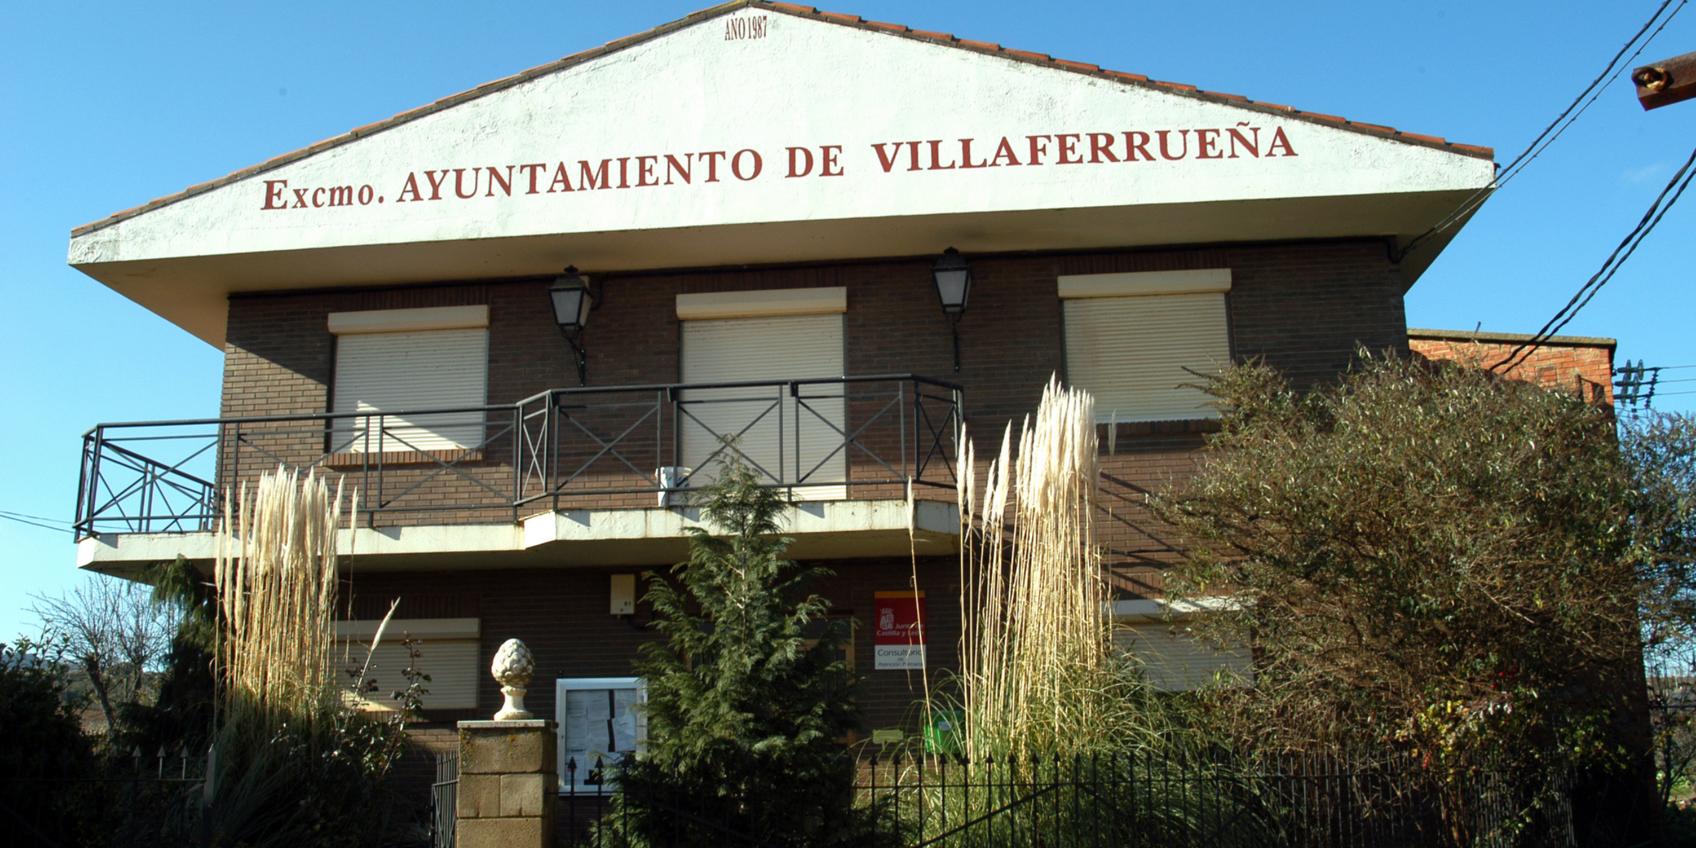 Villaferrueña